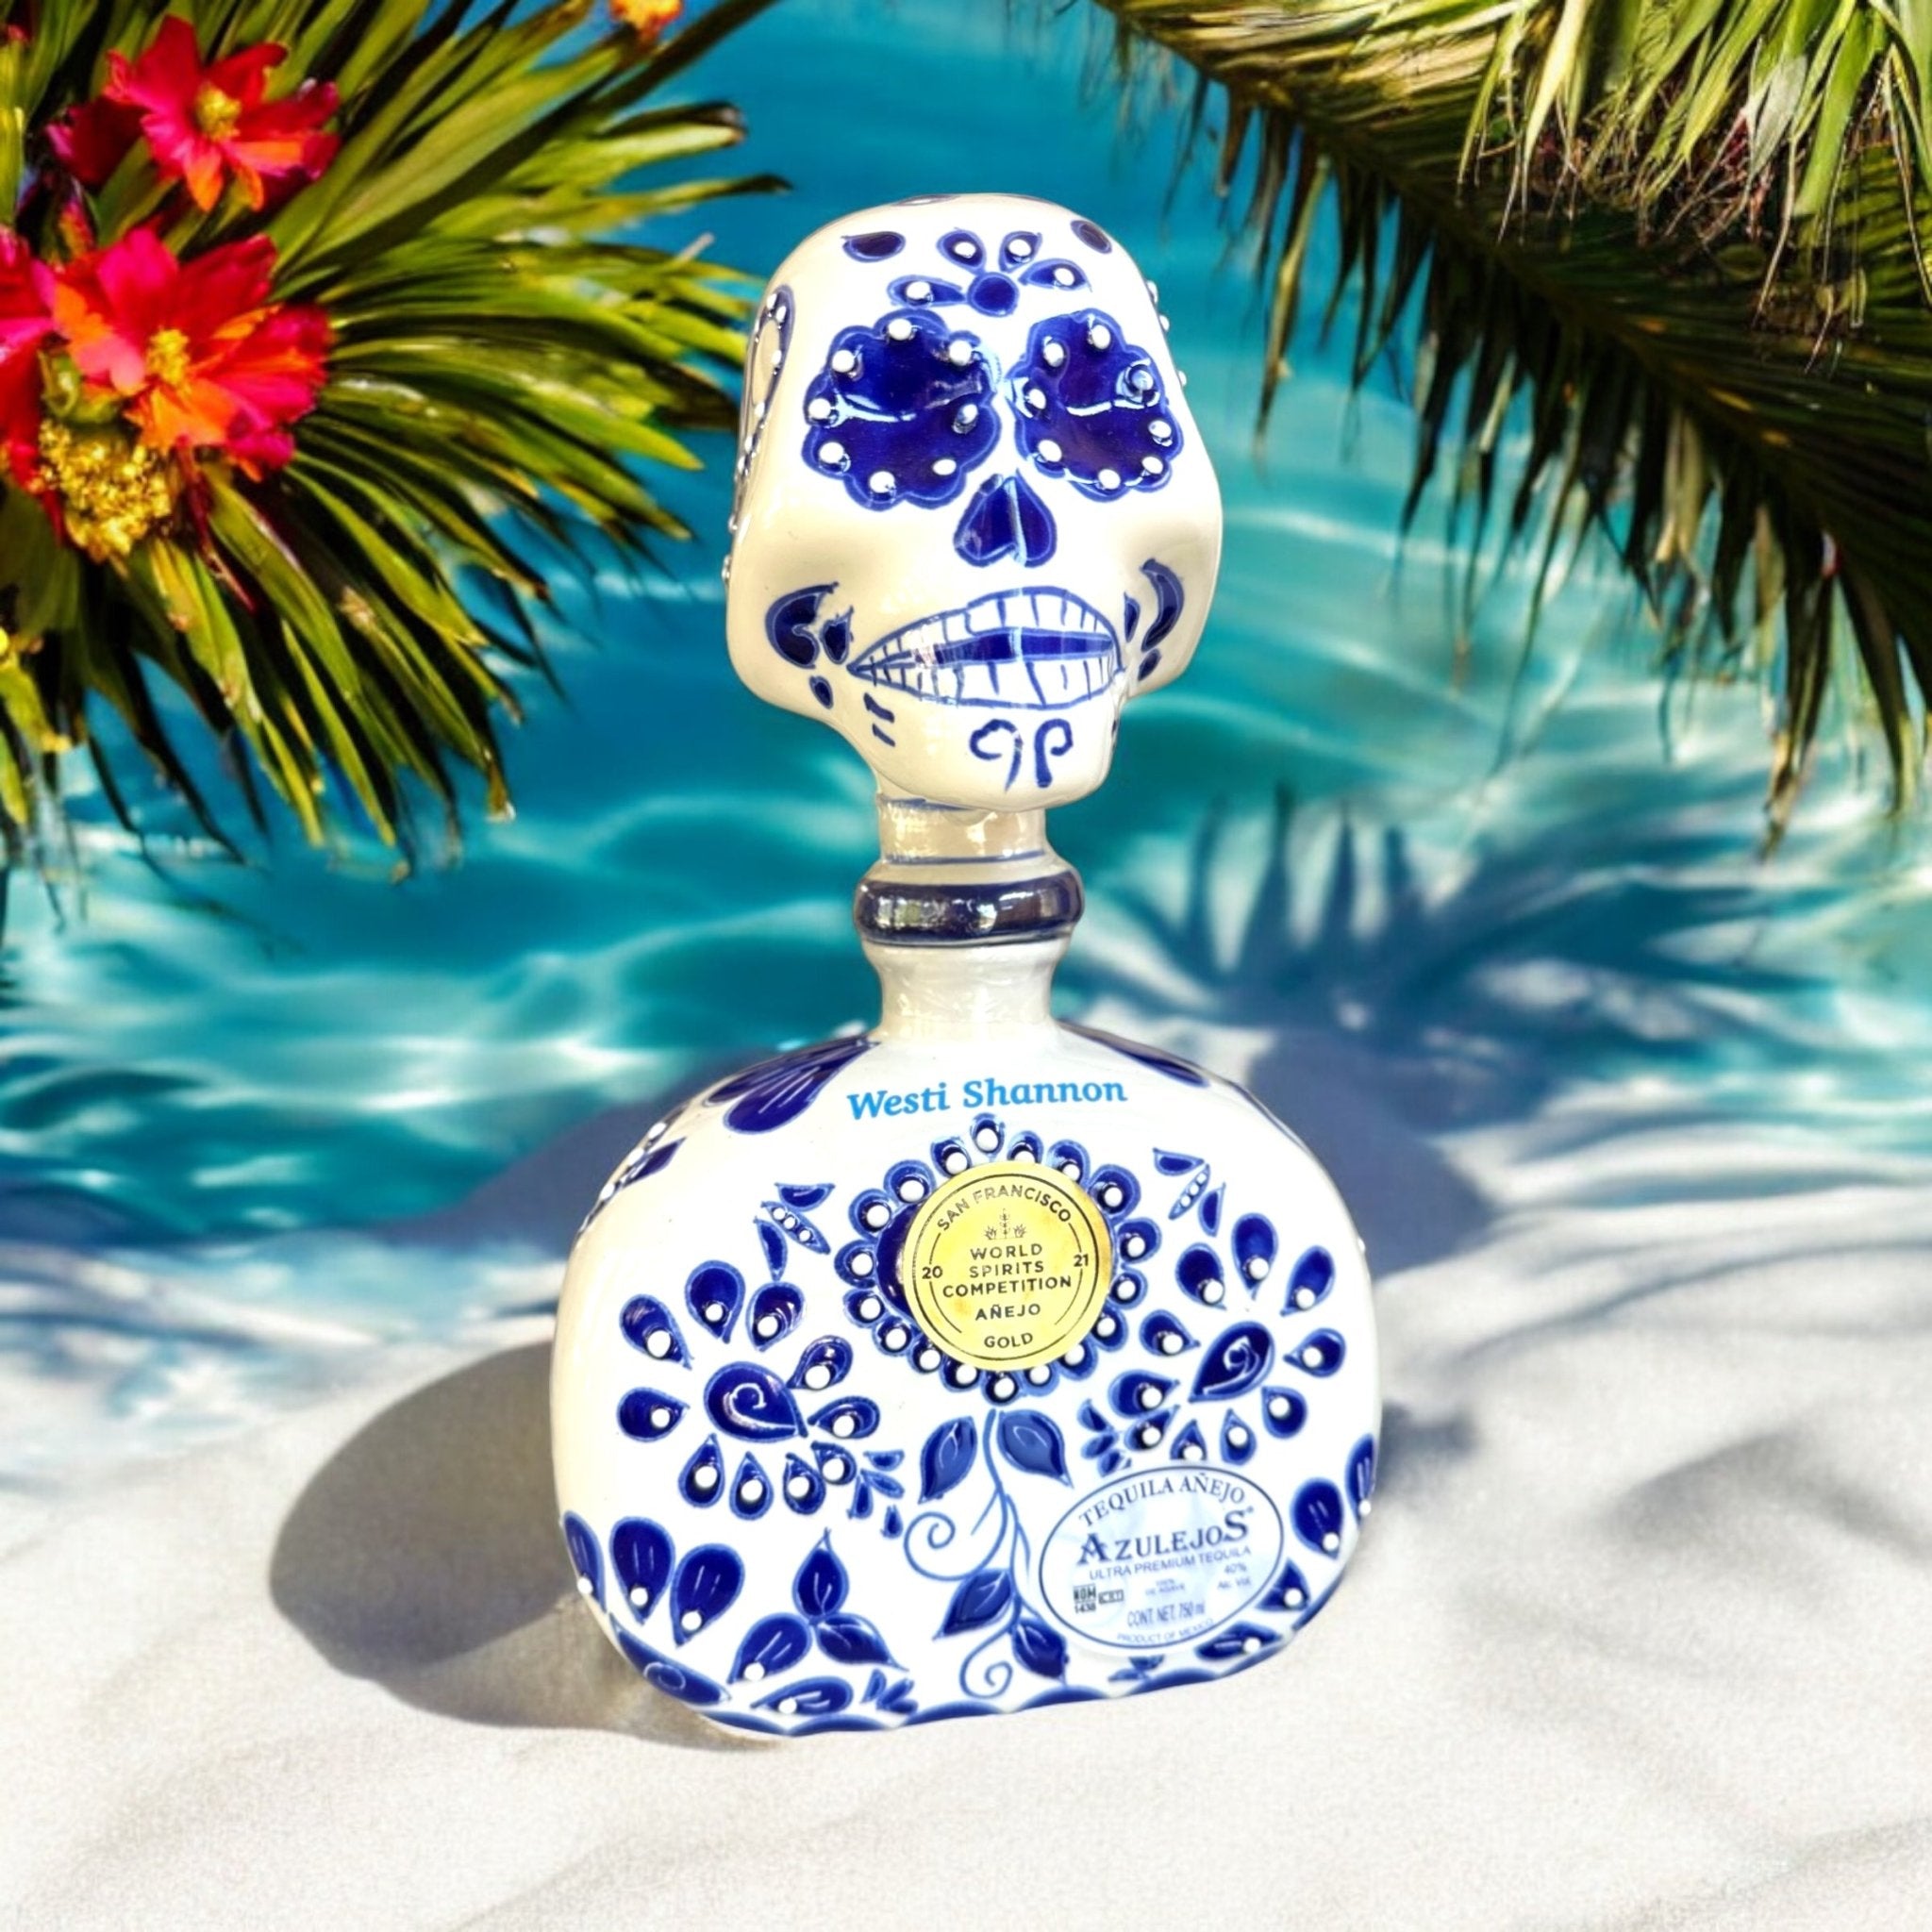 Los Azulejos Skelly Talavera Head Anejo Tequila - Bottle Engraving